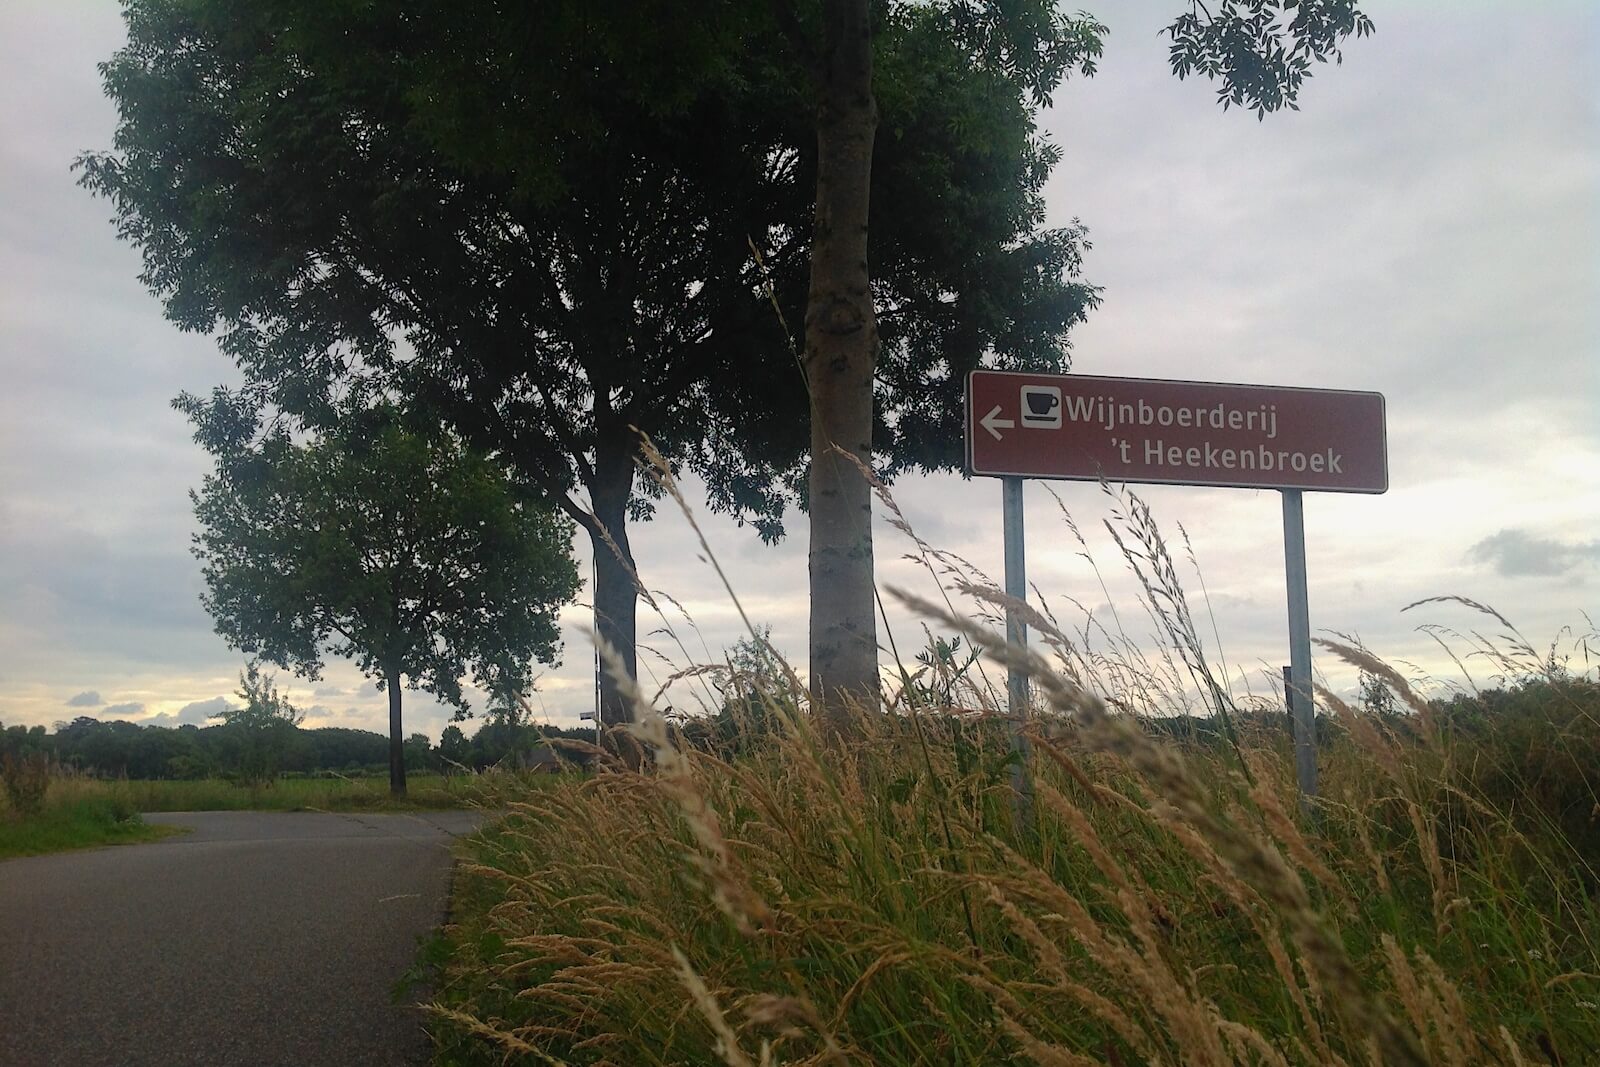 De route naar Wijnboerderij 't Heekenbroek